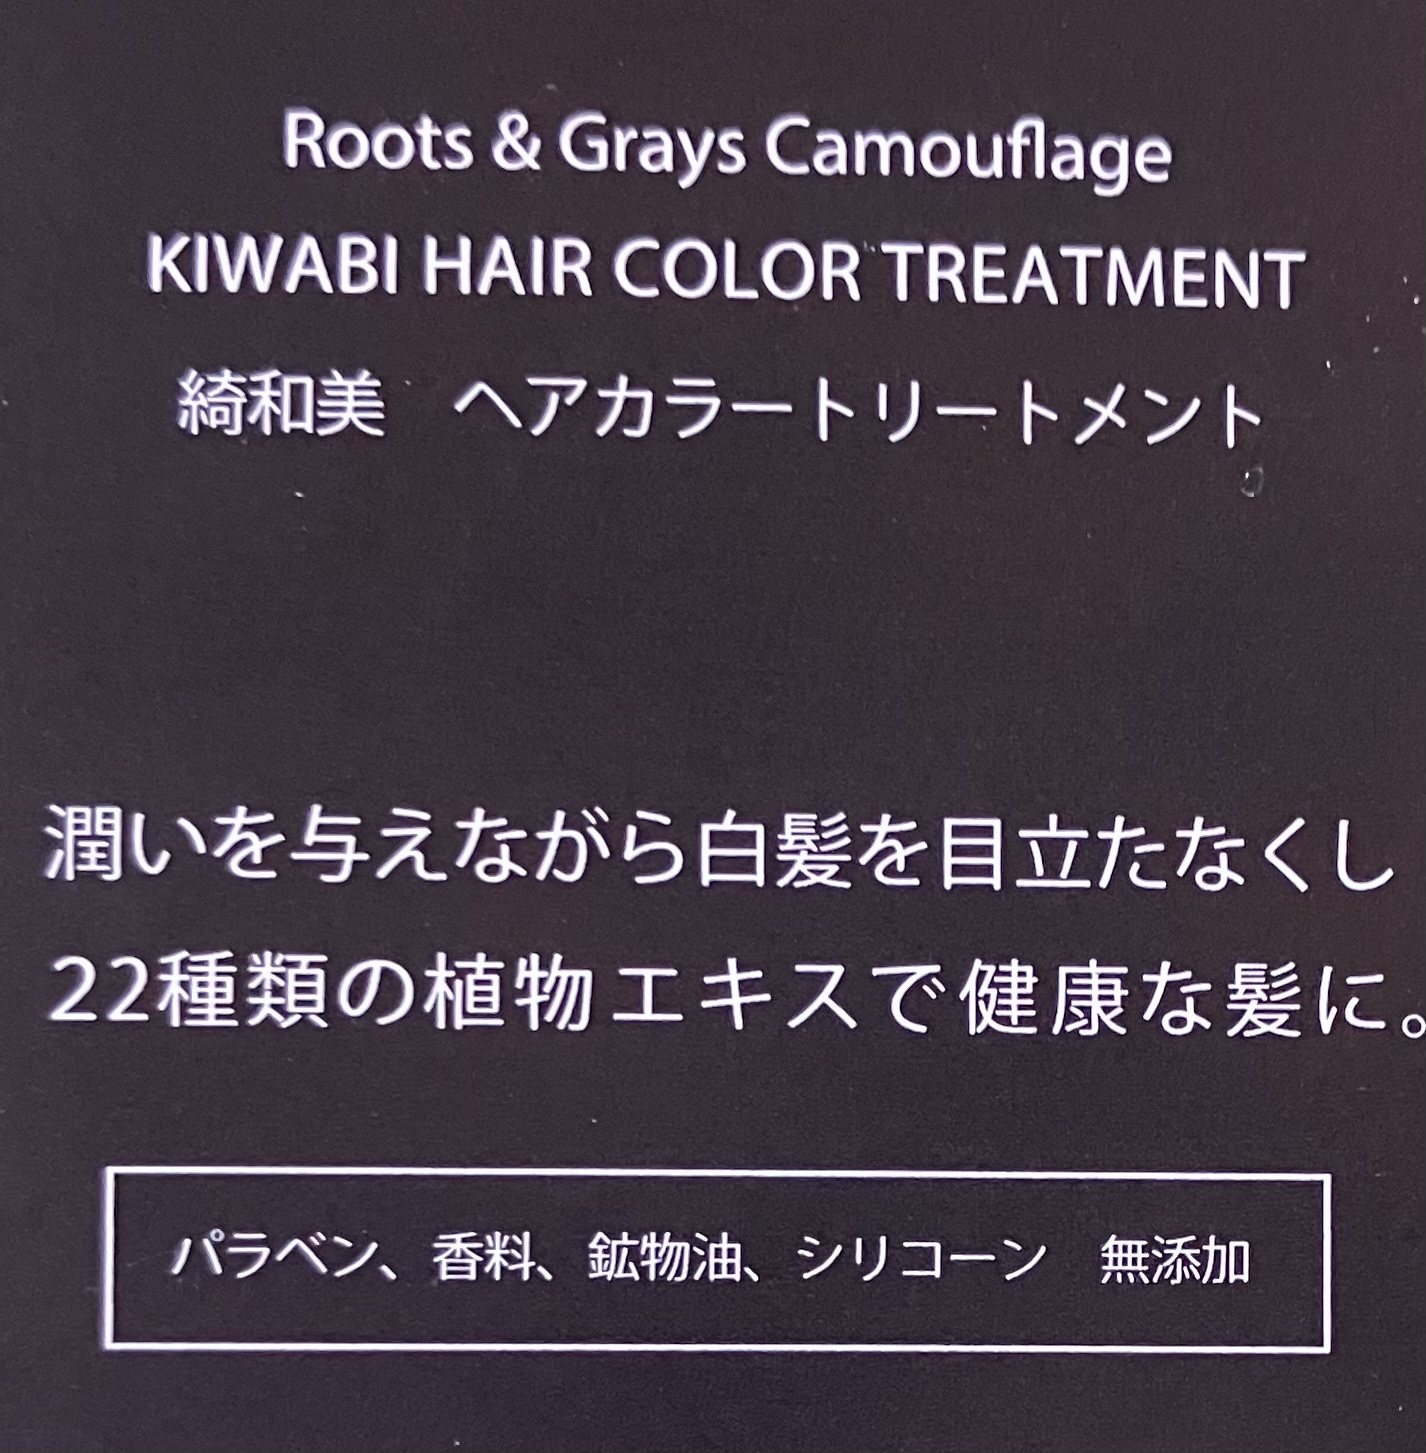 綺和美(KIWABI) ROOT VANISH By KAZUMI 白髪染めトリートメントの良い点・メリットに関するれなさんの口コミ画像1